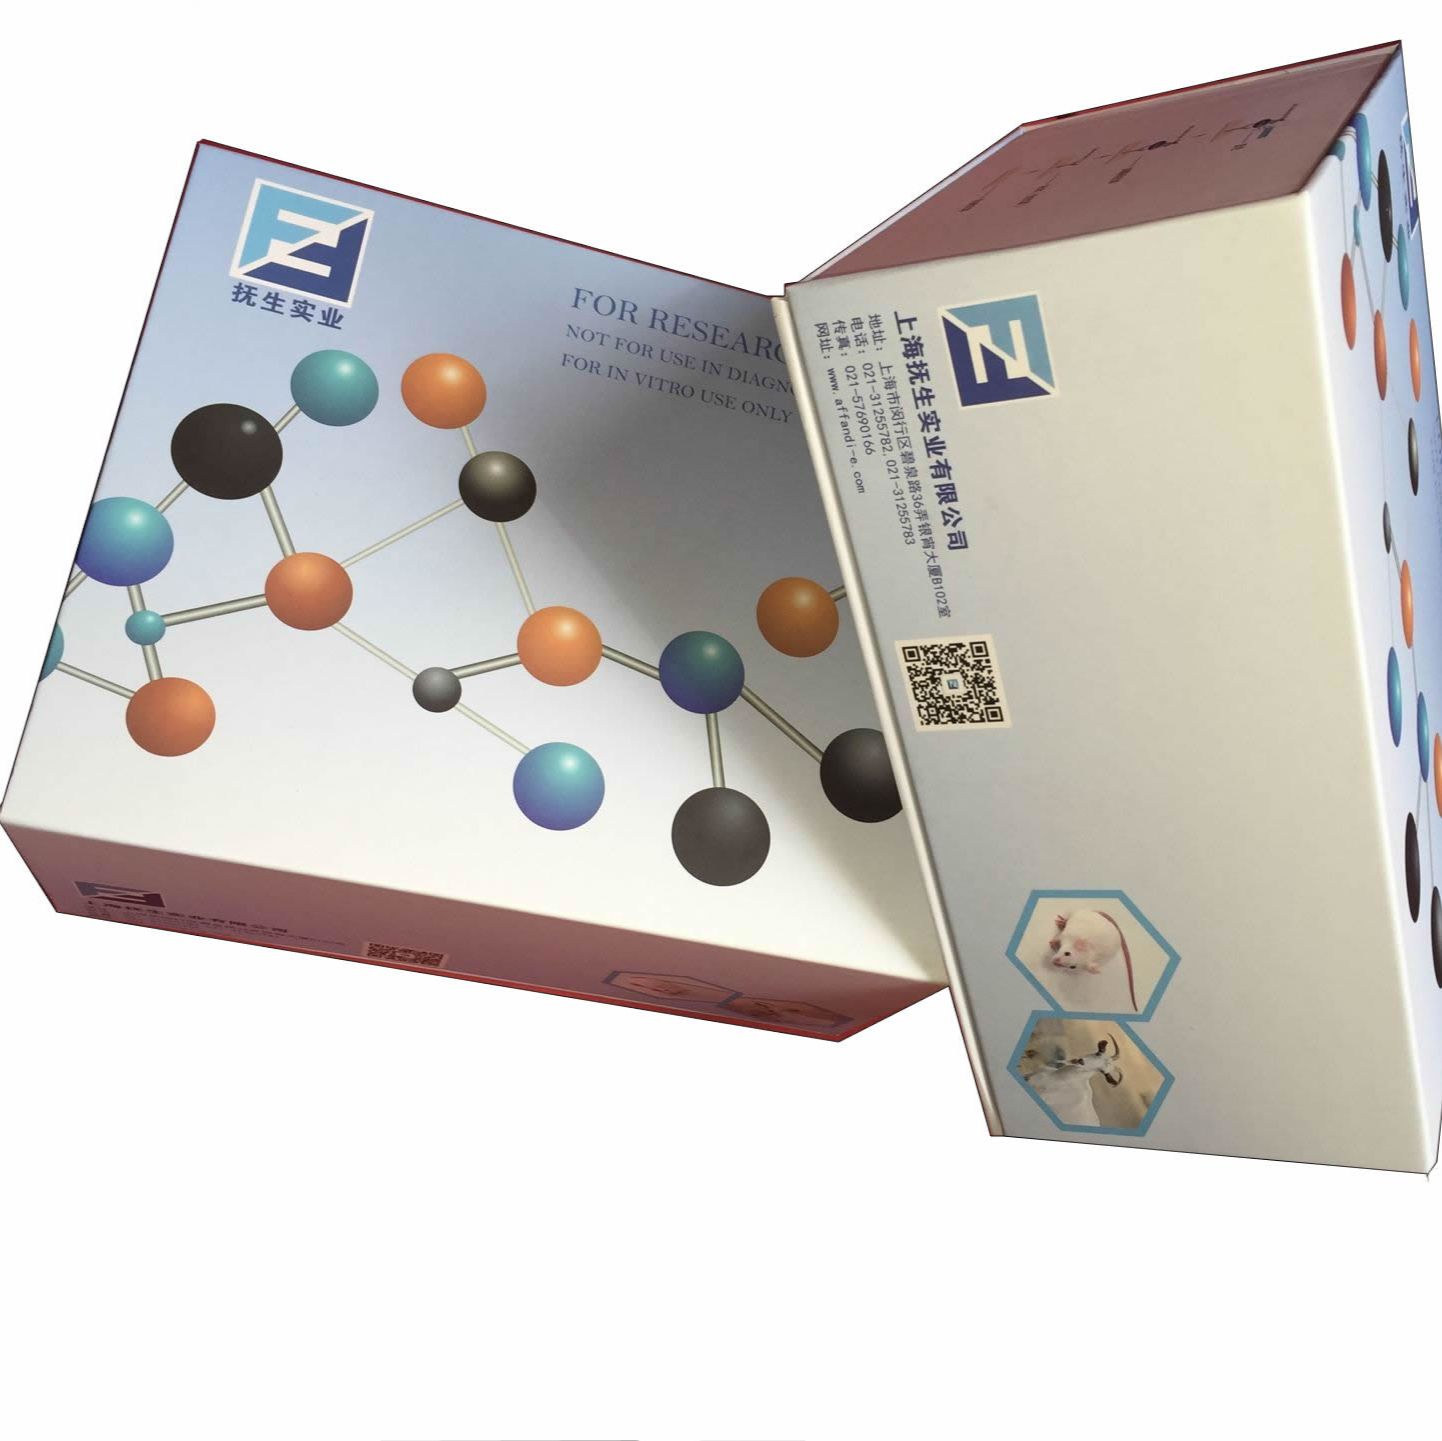 FOR 6-phosphofructokinase type C ELISA Kit